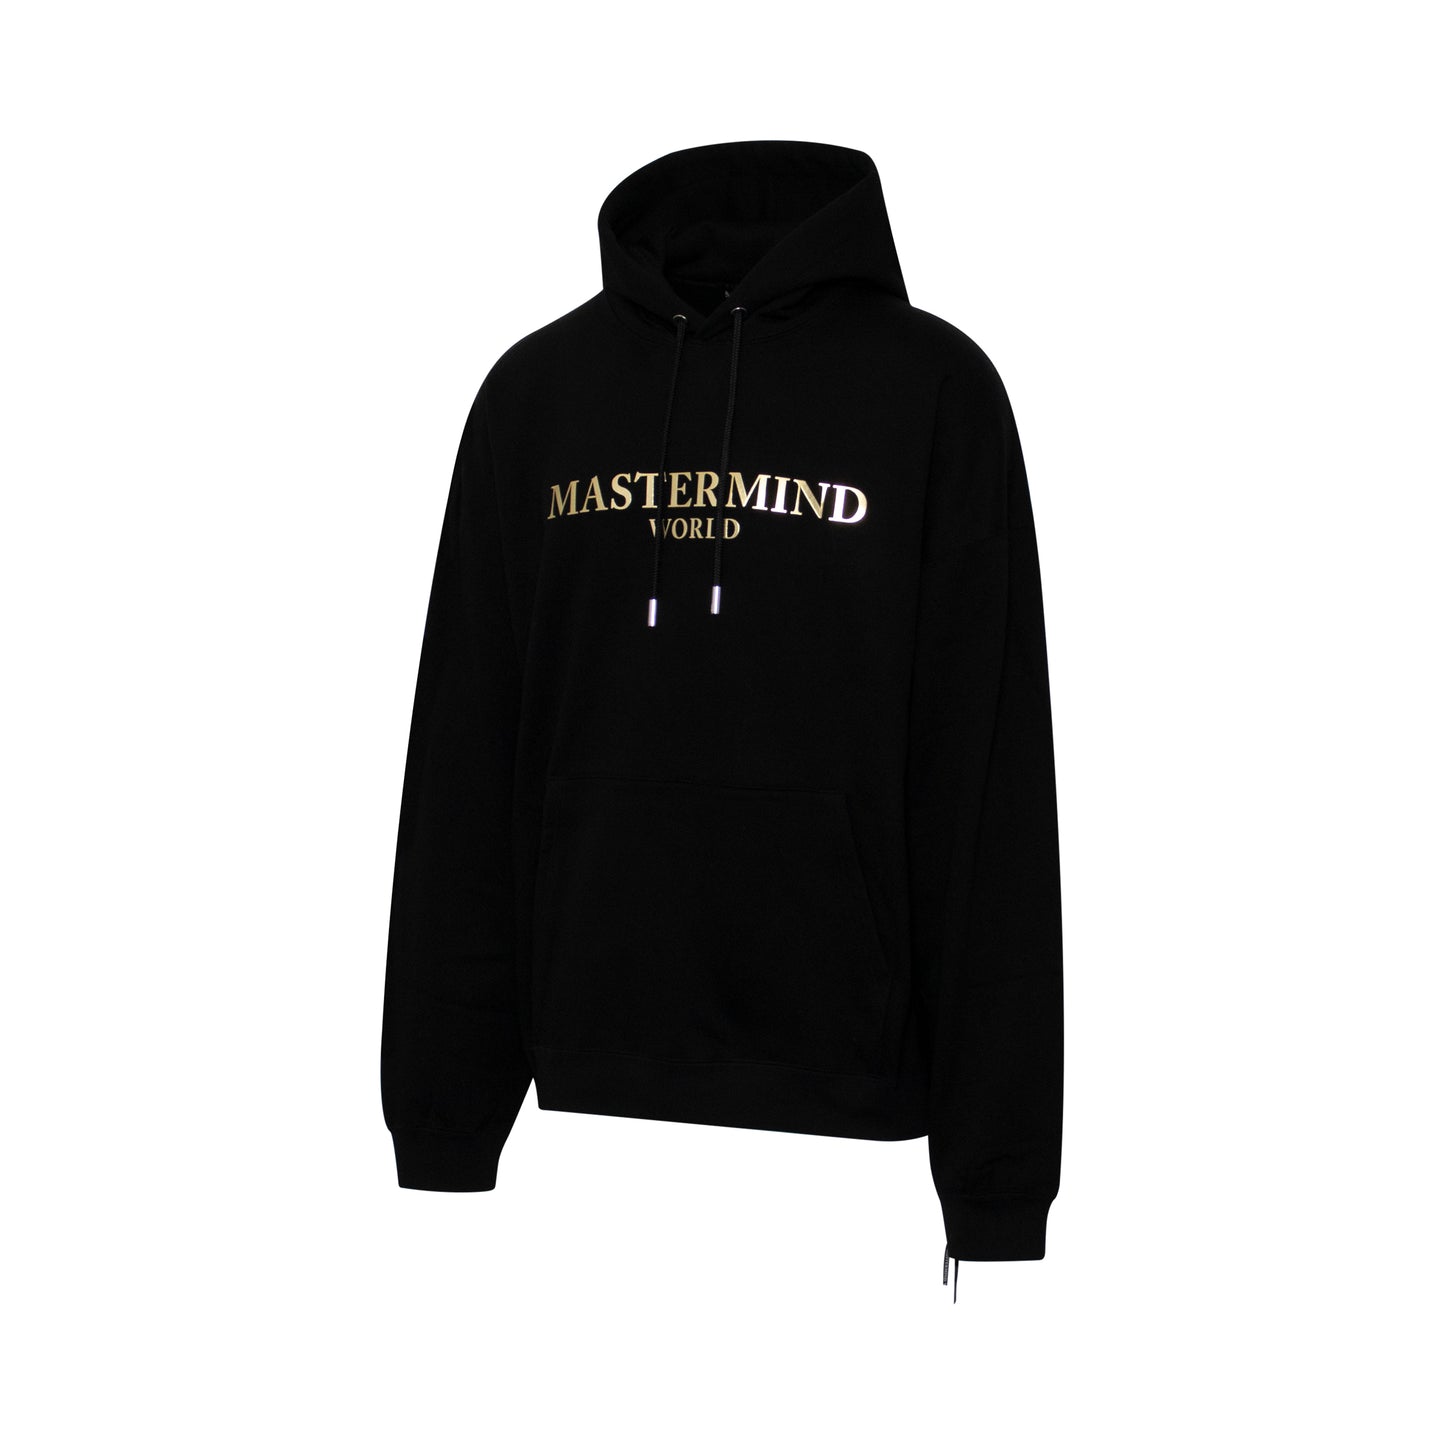 Mastermind World Sweatshirt in Black